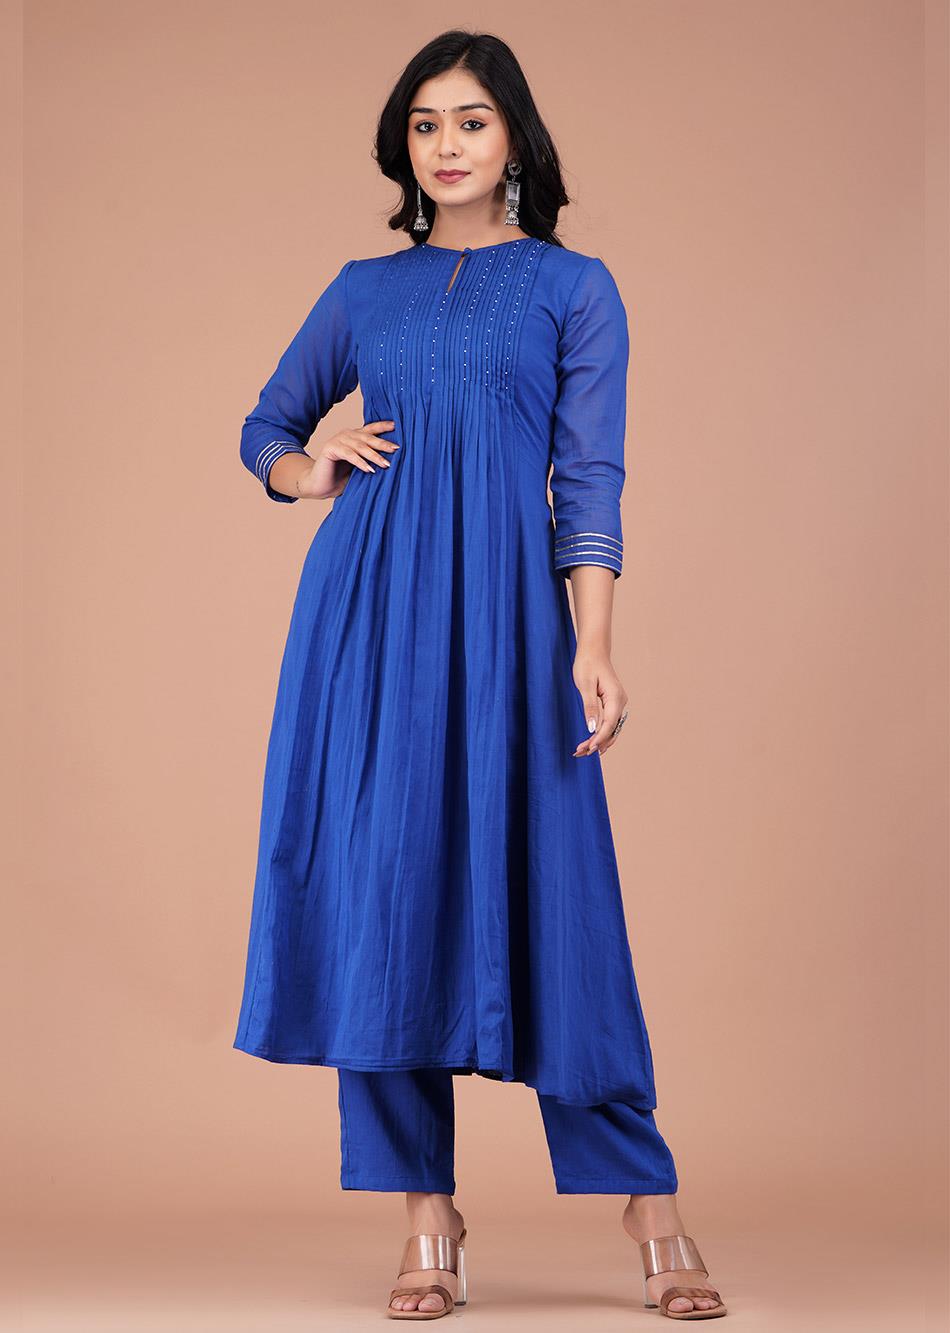 Blue Pin tucks Anarkali Kurta By Jovi Fashion